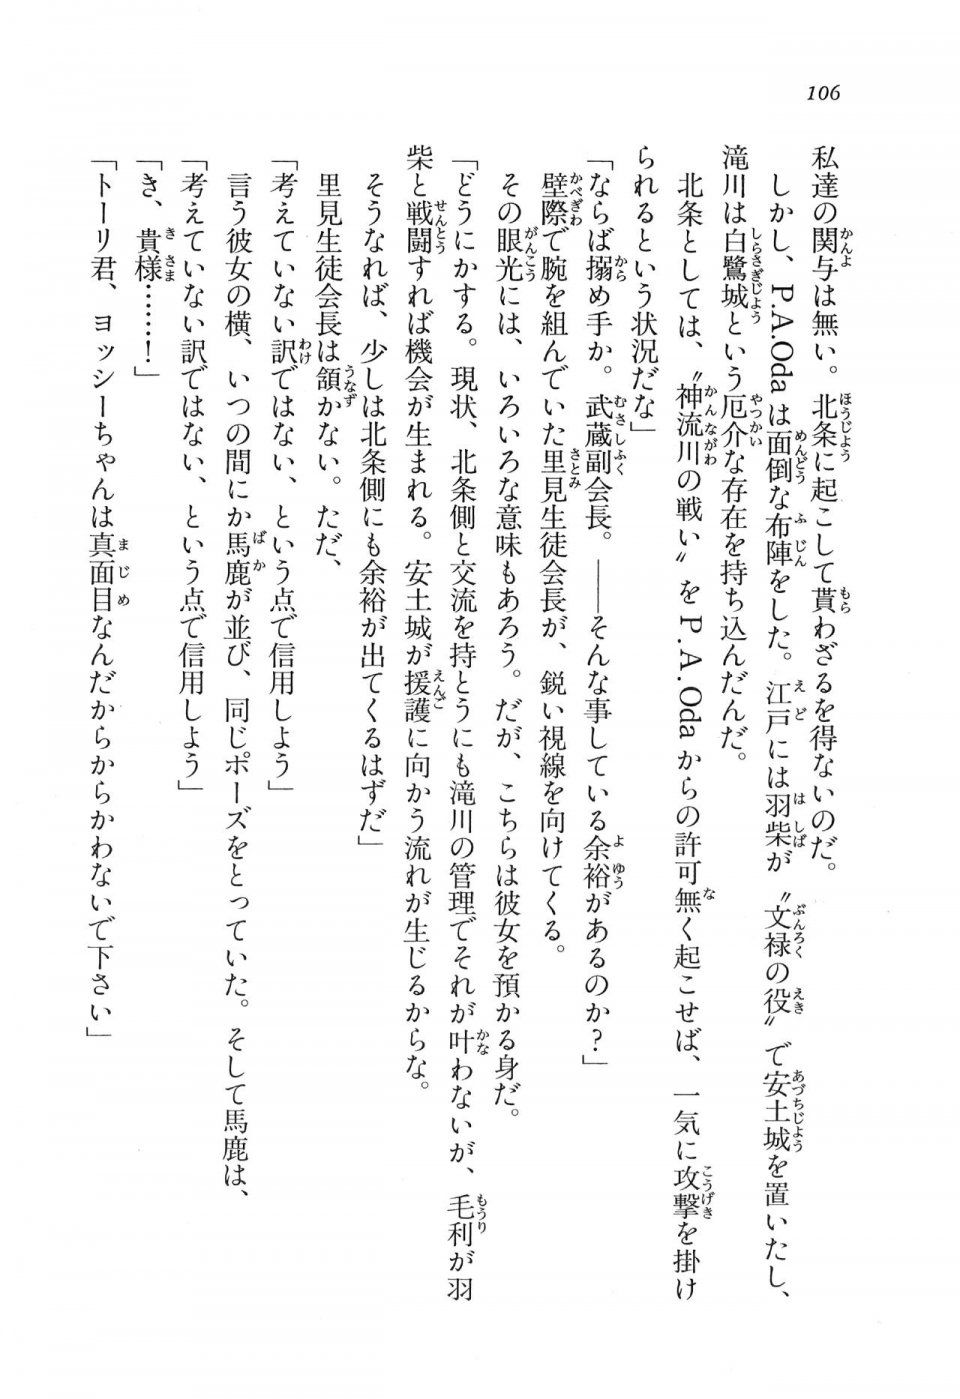 Kyoukai Senjou no Horizon LN Vol 11(5A) - Photo #106